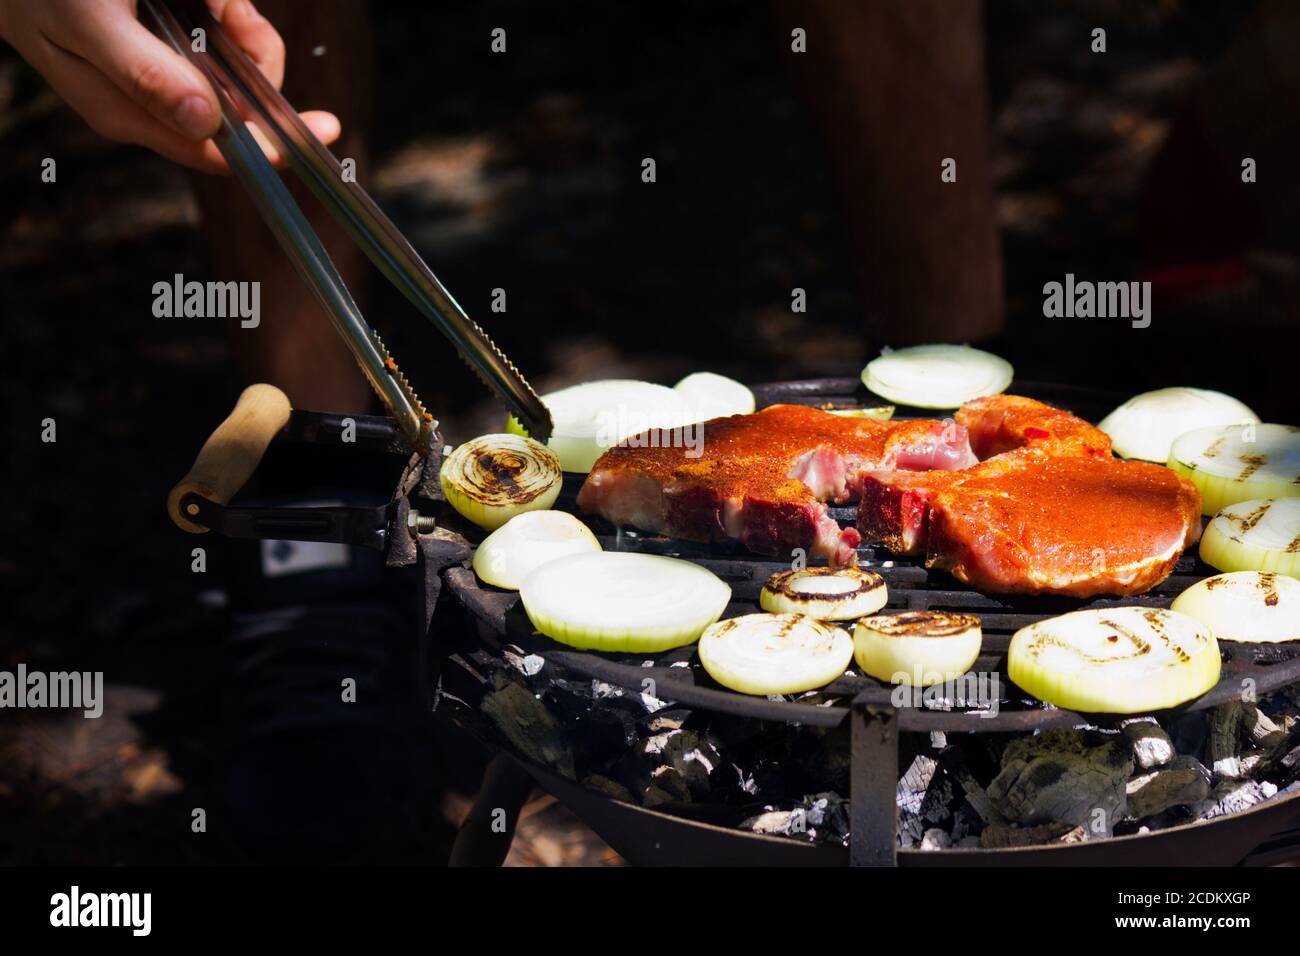 La viande sur le barbecue avec grillemarks Banque D'Images